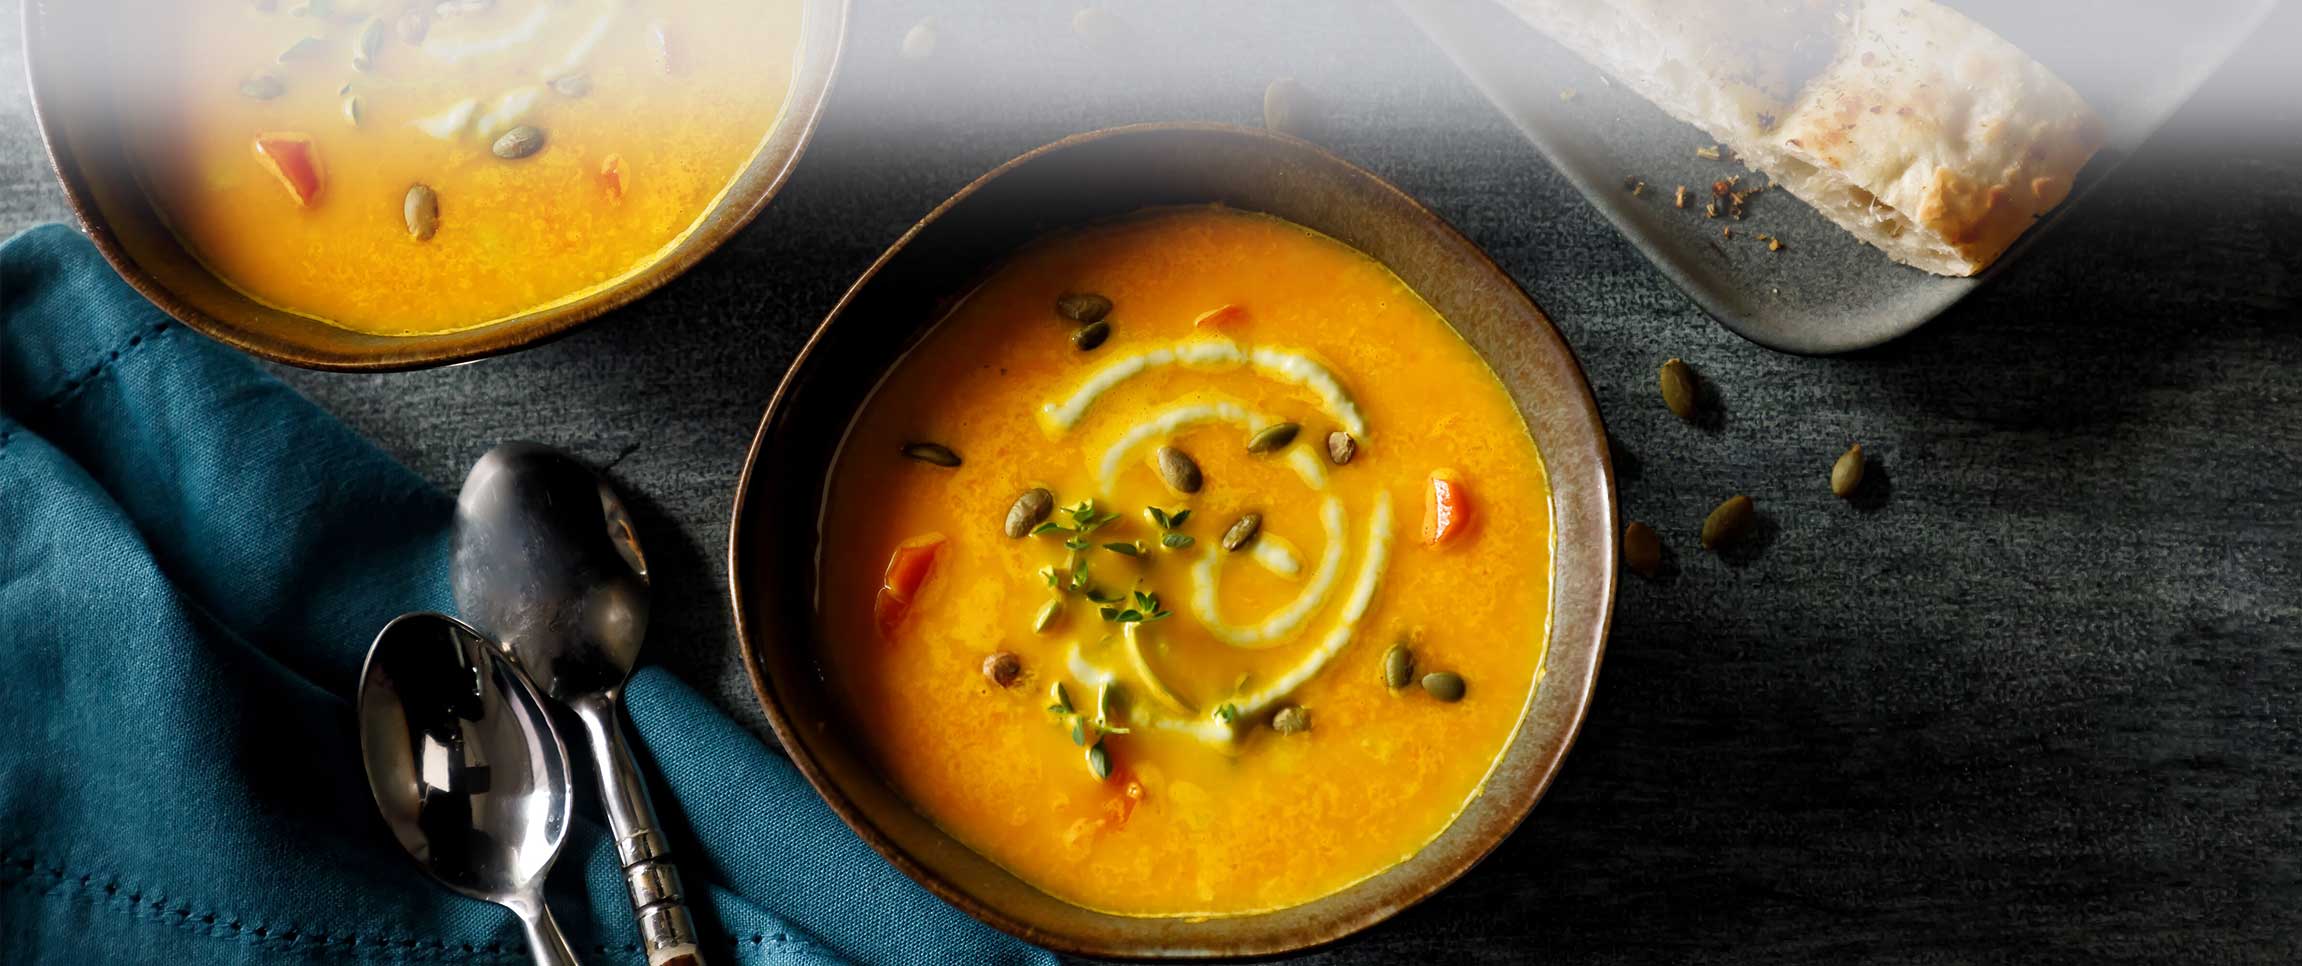 Carrot Soup with Avocado Crema